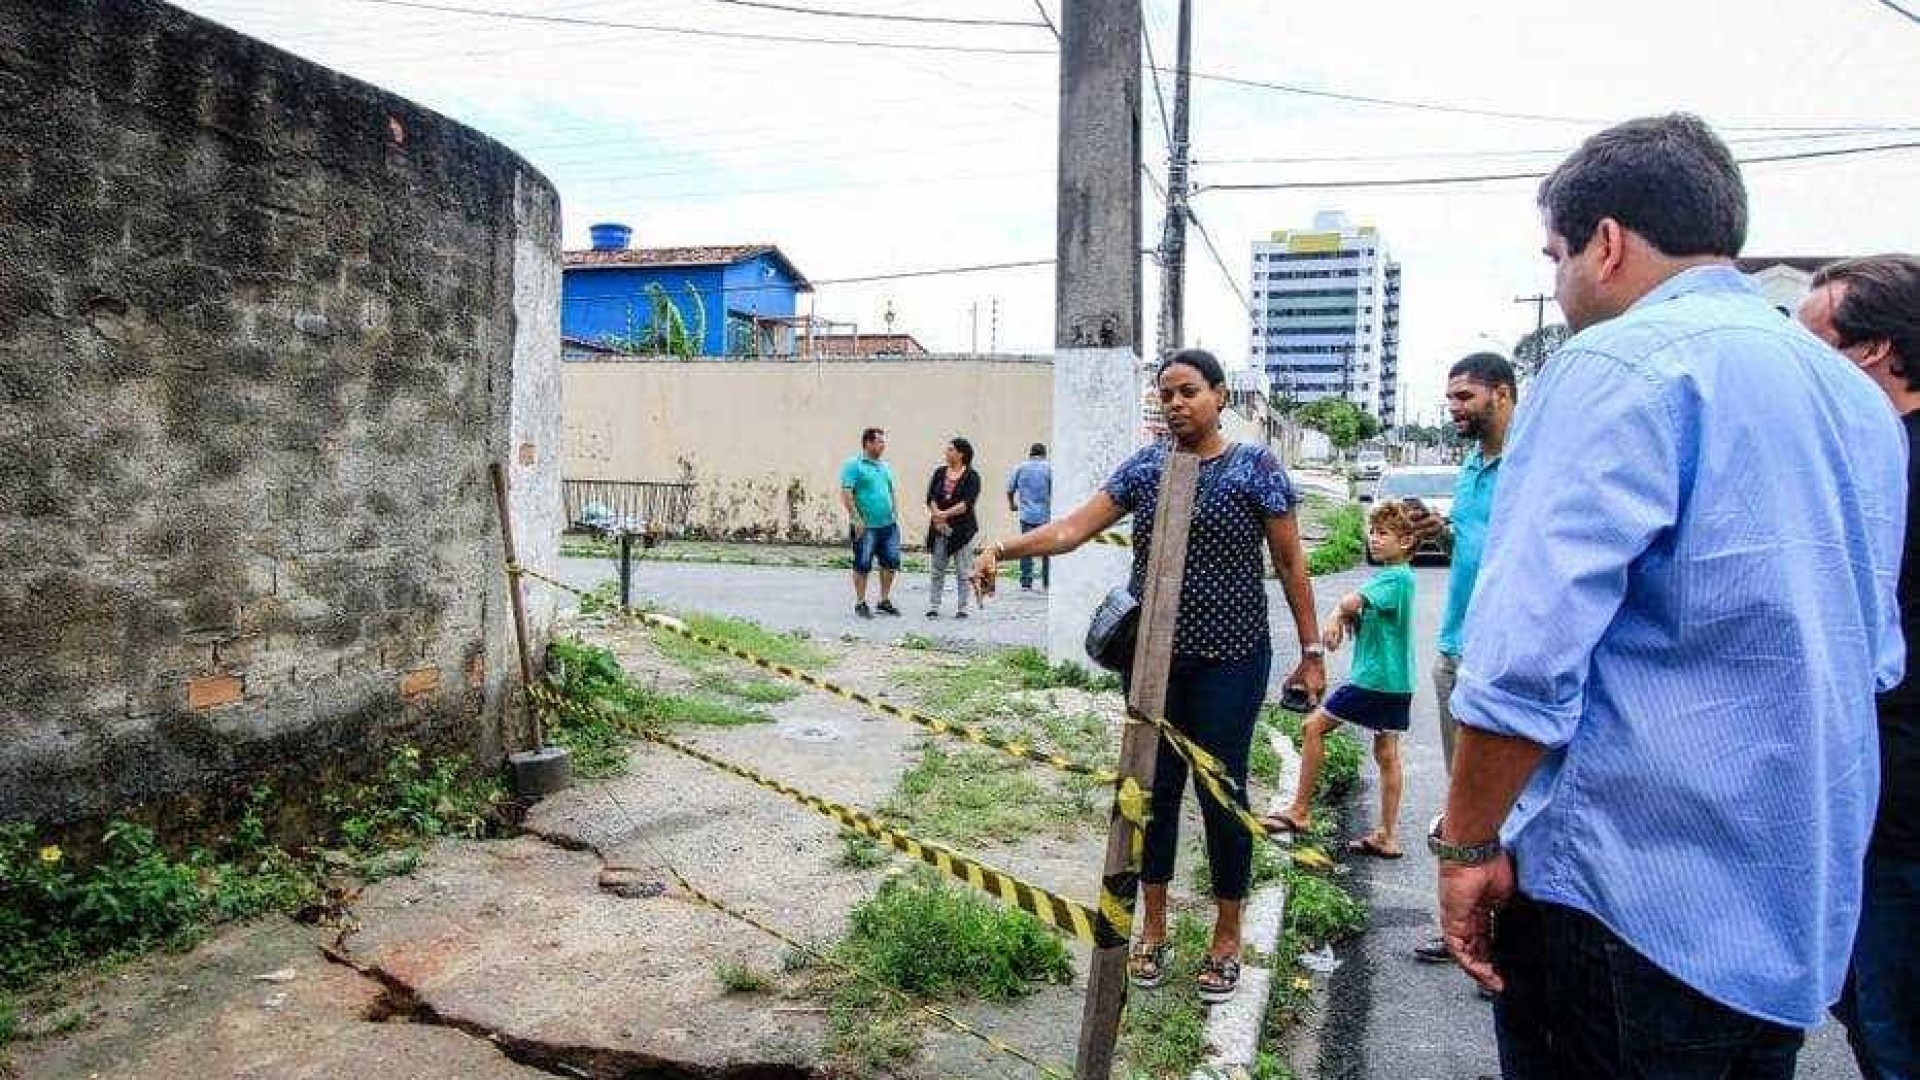 Rachaduras afetam moradores de Maceió; Bolsonaro determina investigação